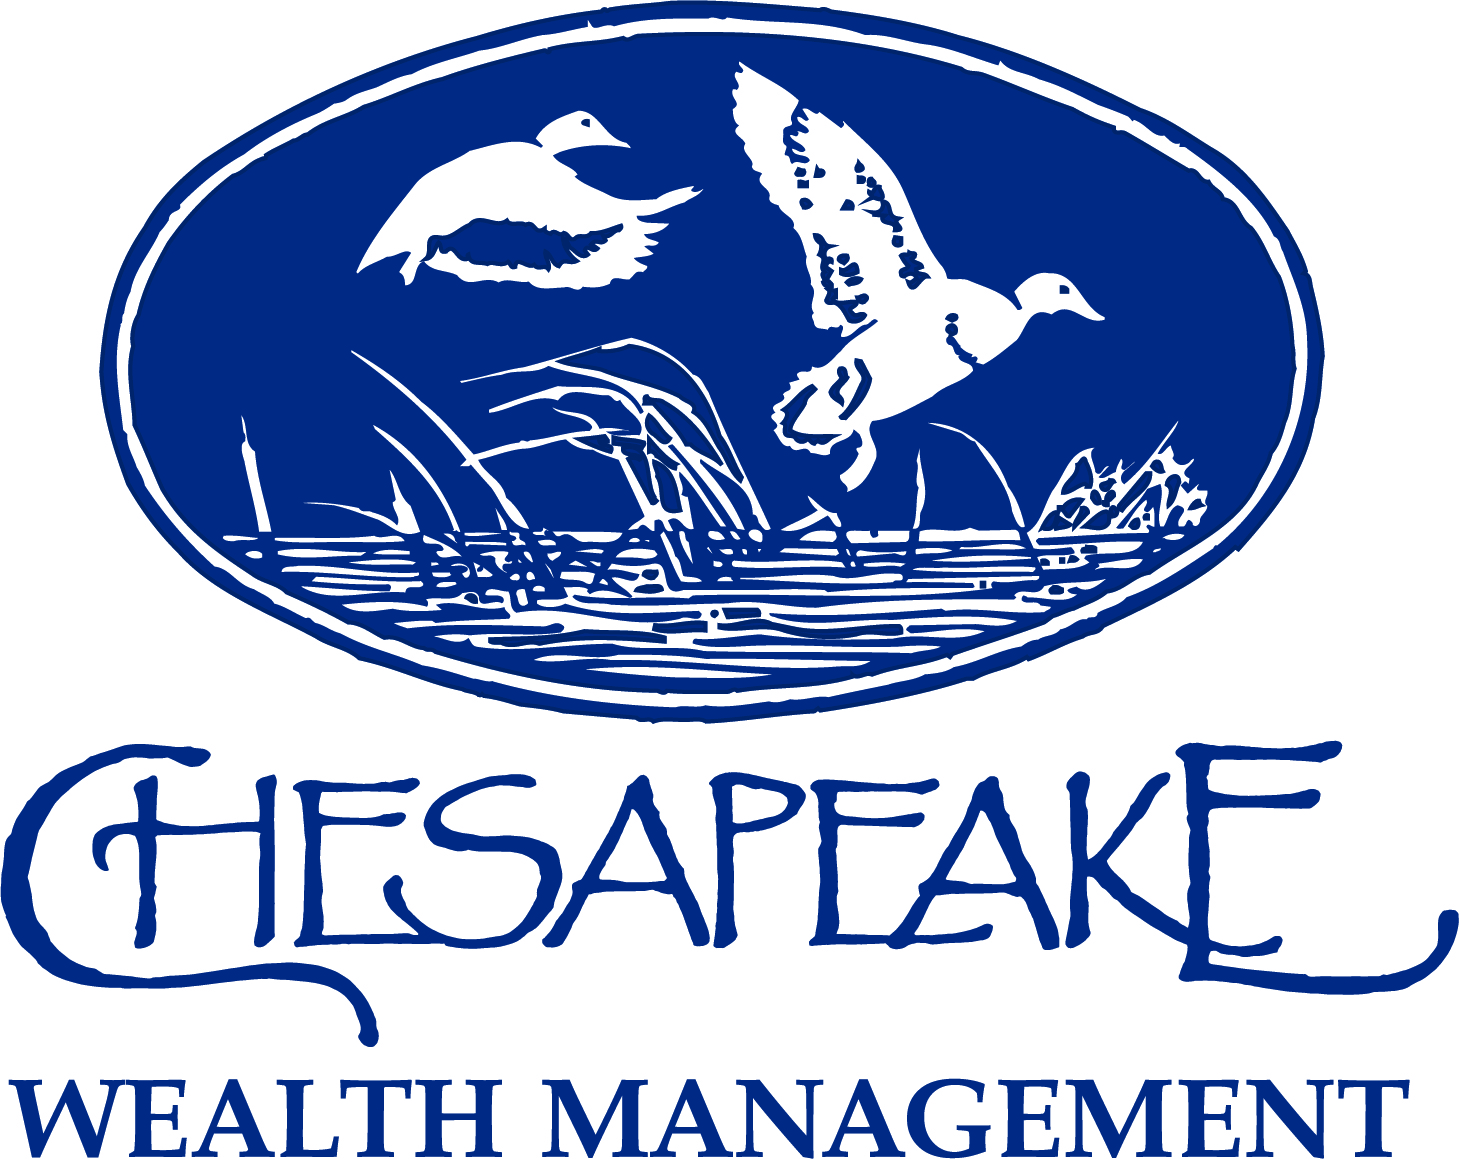 3. Chesapeake Wealth Management (Promise Garden)